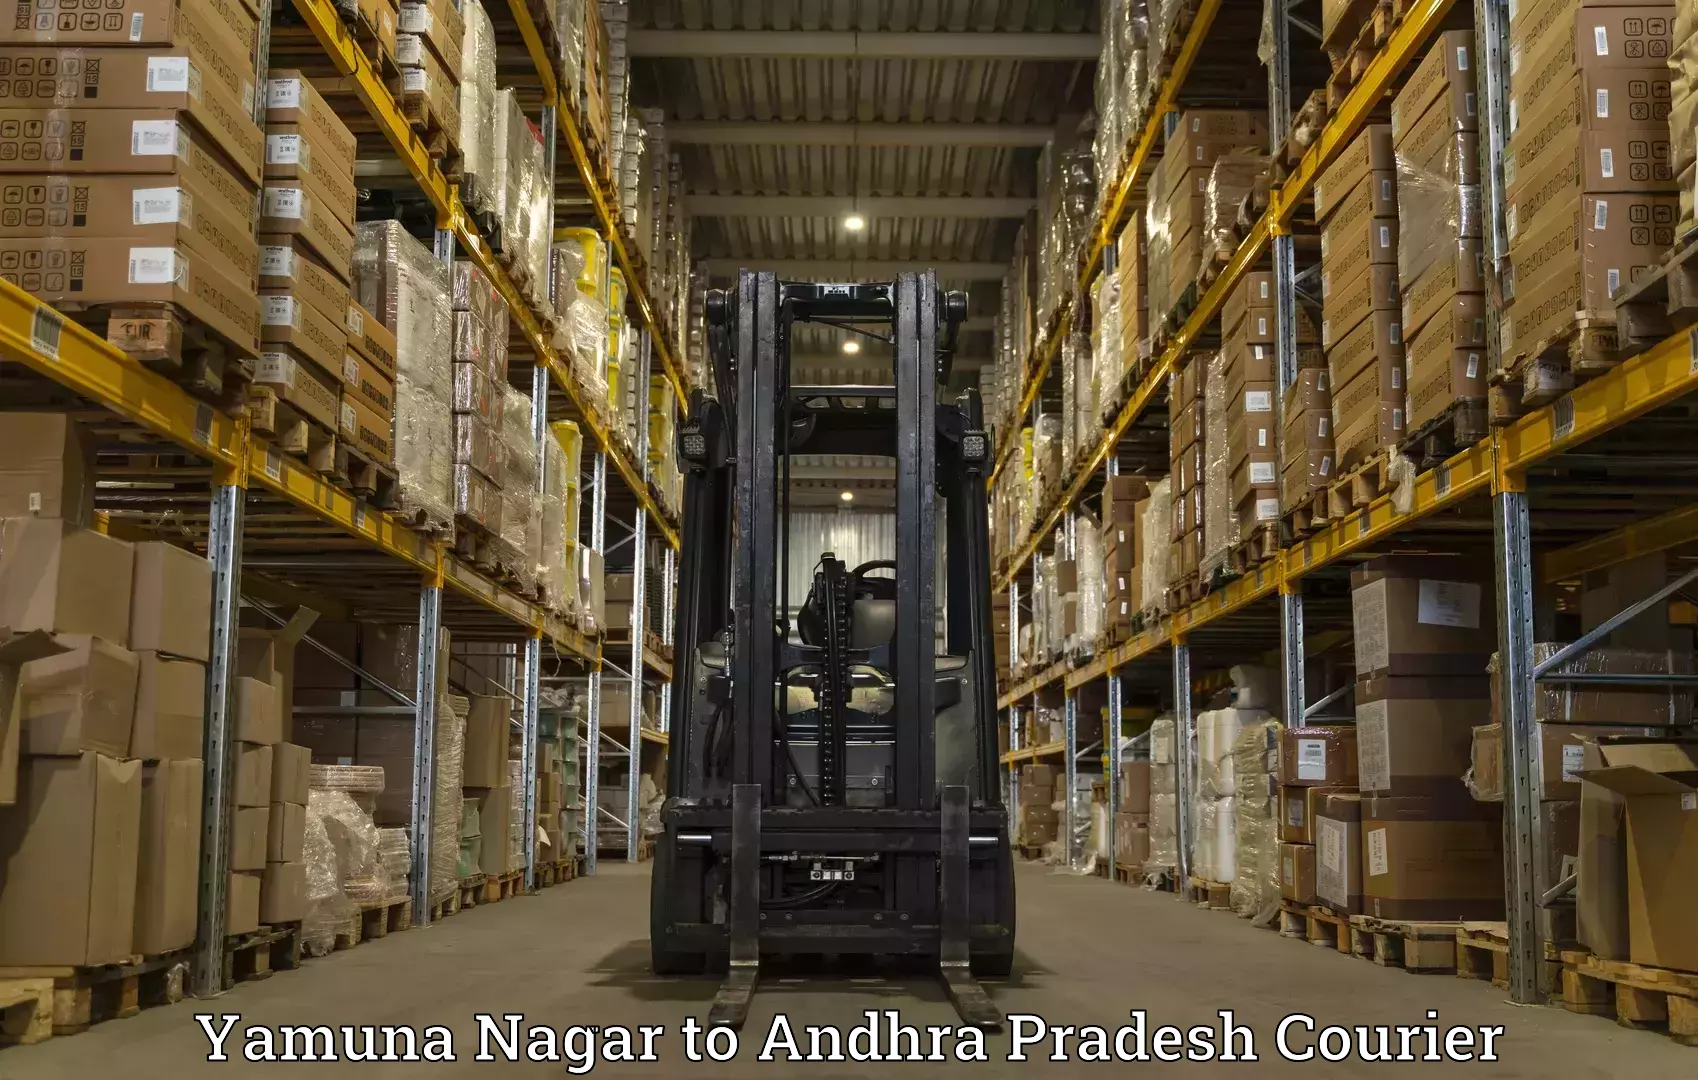 High-capacity parcel service Yamuna Nagar to Koyyuru